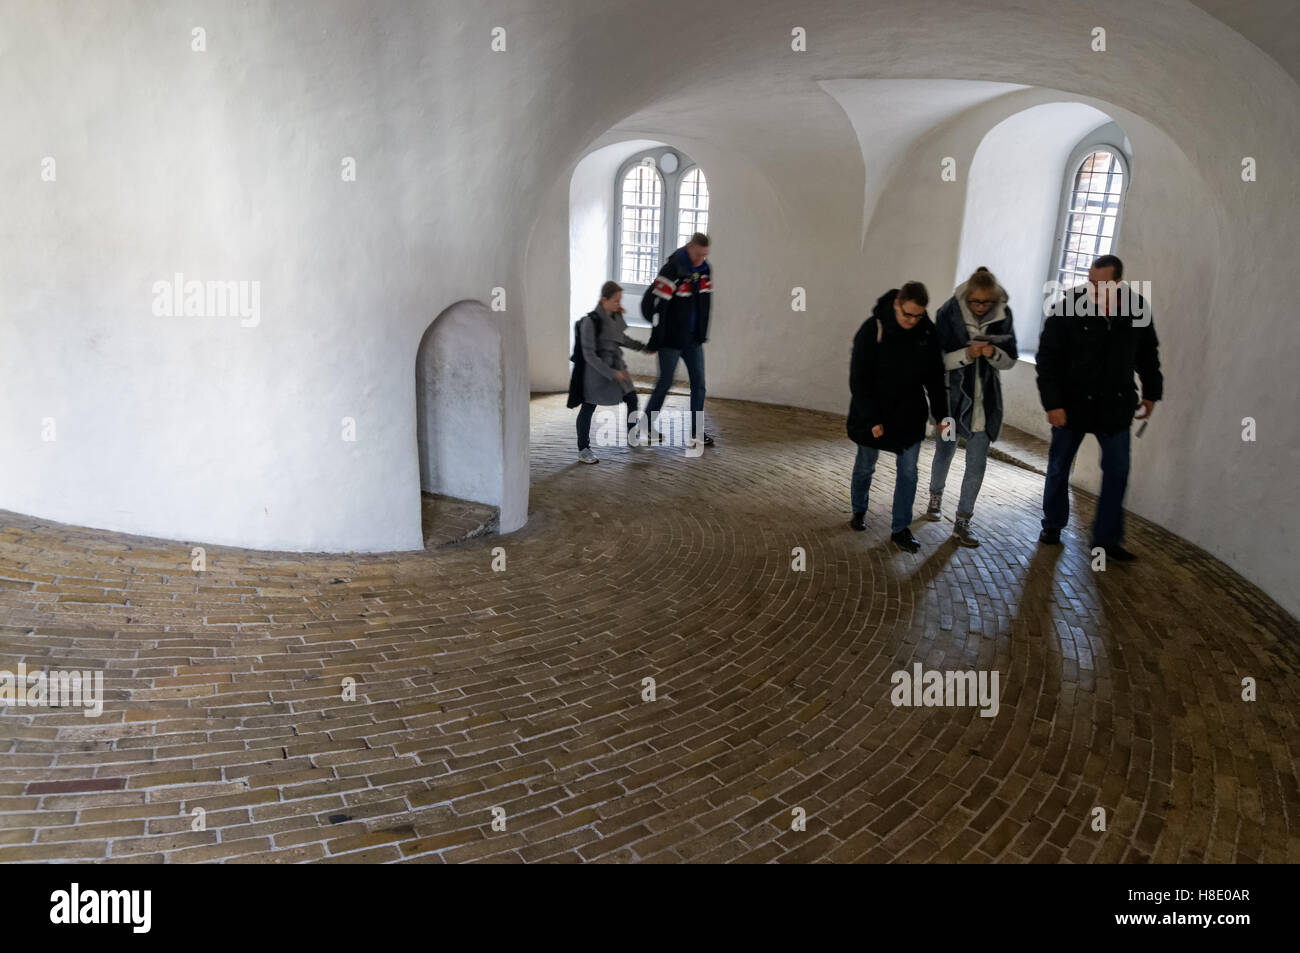 Les touristes à l'intérieur de la tour ronde de Copenhague, Danemark Banque D'Images